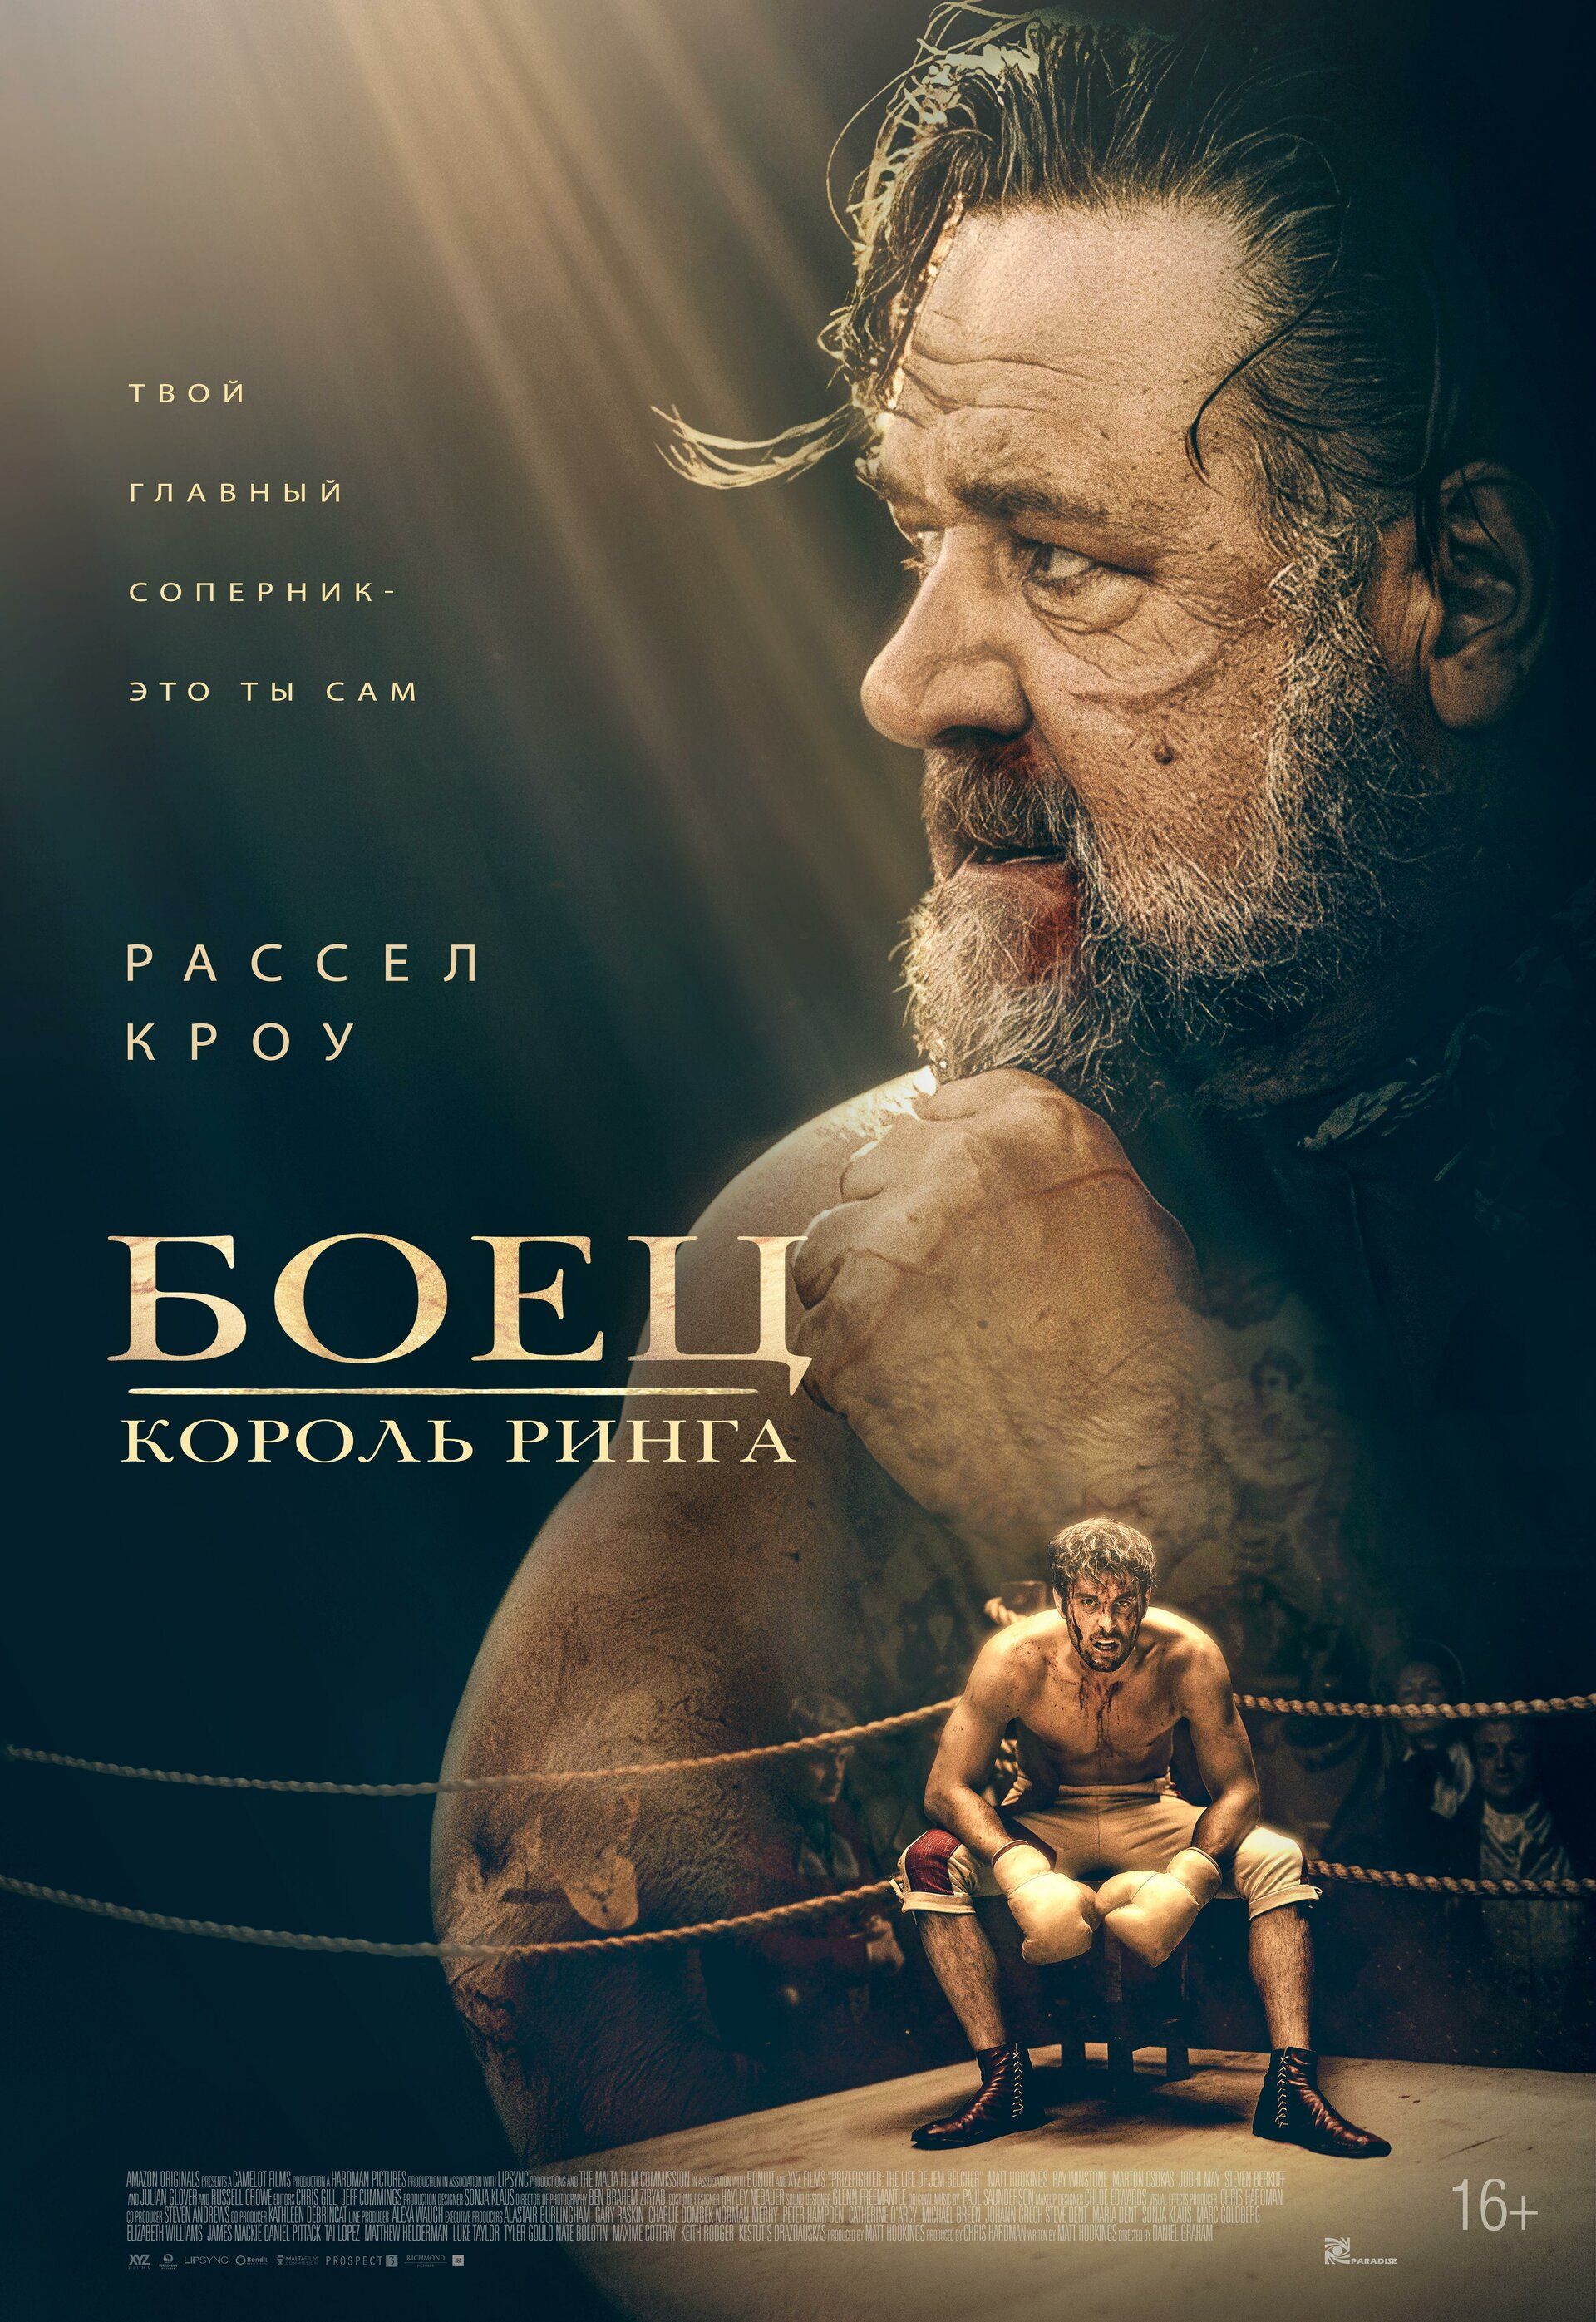 Постер к фильму Боец: Король ринга / Prizefighter: The Life of Jem Belcher (2022) BDRip 1080p от селезень | D